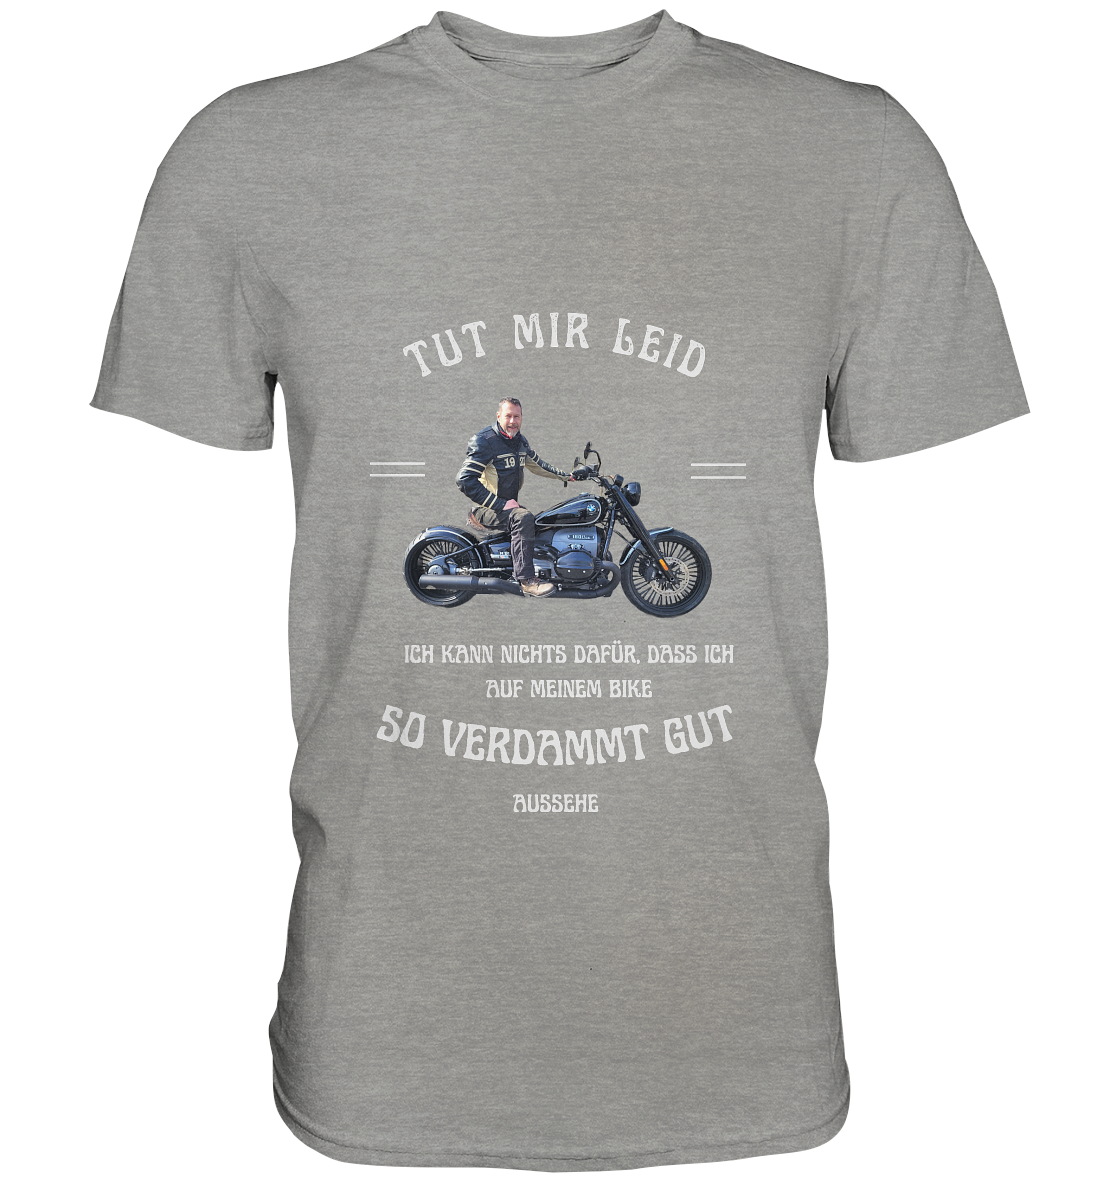 "Tut mir leid, ich kann nichts dafür, dass ich auf meinem Bike so verdammt gut aussehe" _ für Jürgen | individualisiertes Shirt mit personalisiertem Foto + Motorrad-Spruch in hellem Design